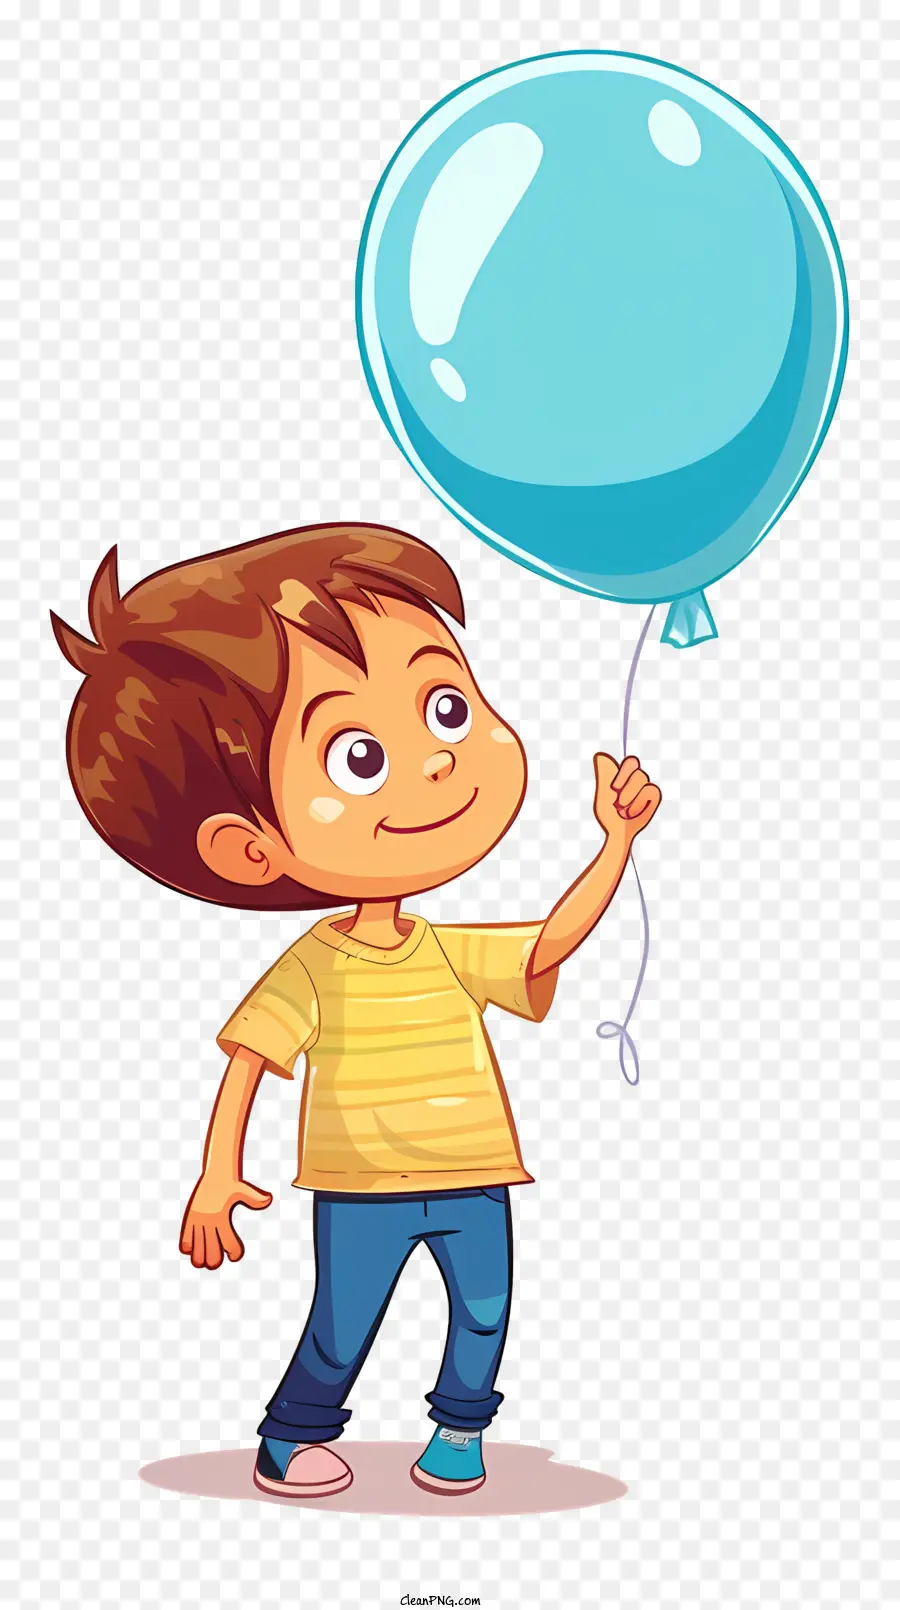 màu xanh bóng - Cậu bé hạnh phúc cầm khinh khí cầu màu xanh, nhìn sang trái